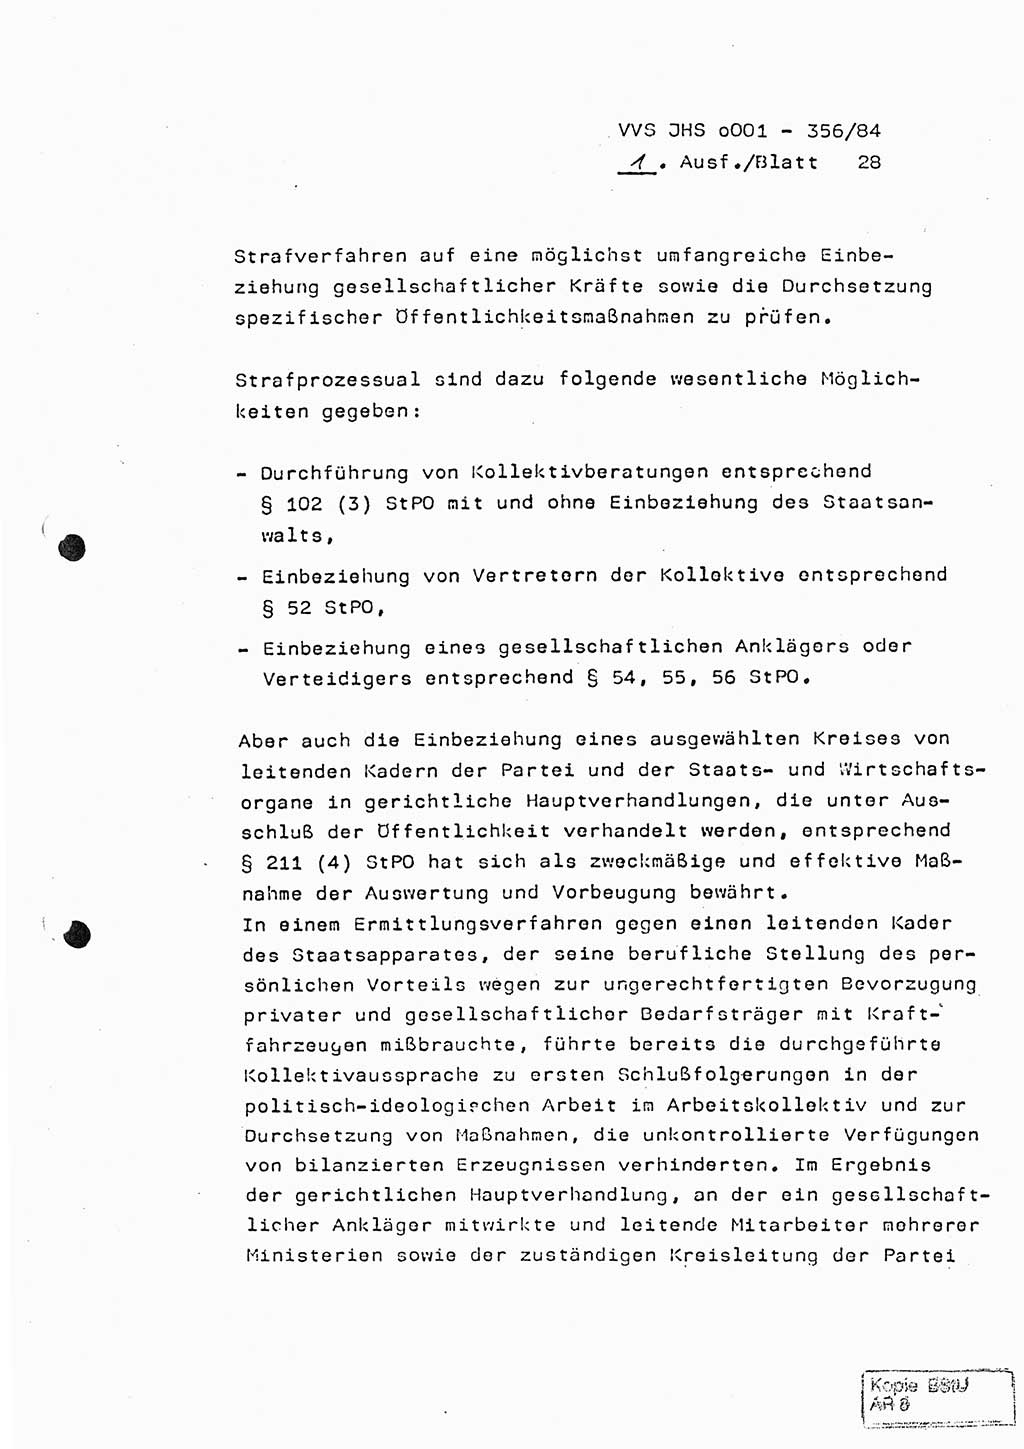 Diplomarbeit, Major Lutz Rahaus (HA Ⅸ/3), Ministerium für Staatssicherheit (MfS) [Deutsche Demokratische Republik (DDR)], Juristische Hochschule (JHS), Vertrauliche Verschlußsache (VVS) o001-356/84, Potsdam 1984, Seite 28 (Dipl.-Arb. MfS DDR JHS VVS o001-356/84 1984, S. 28)